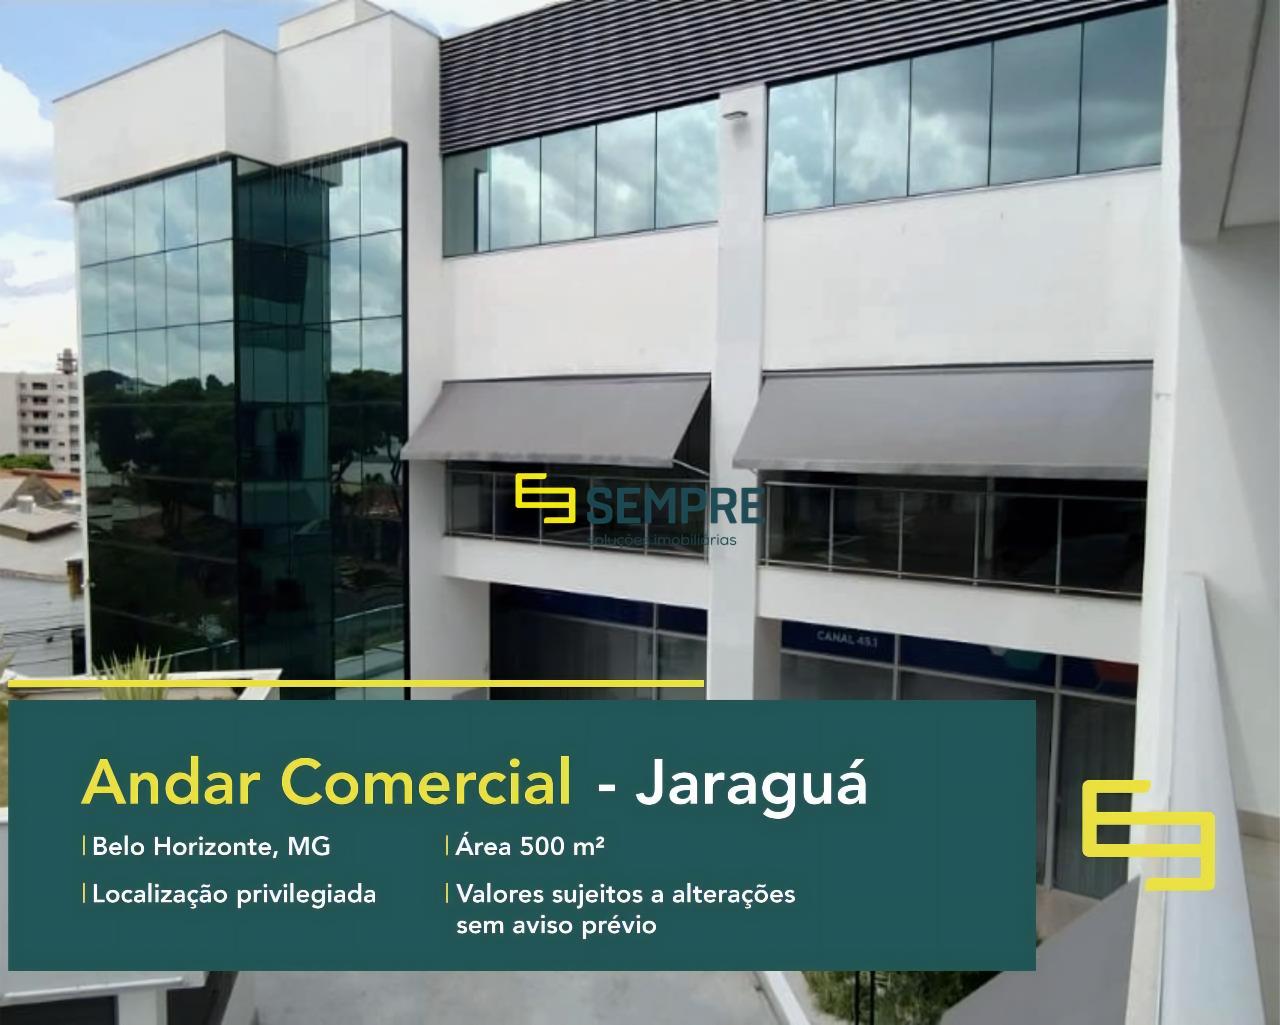 Ponto comercial para alugar no Jaraguá em Belo Horizonte, excelente localização. O estabelecimento comercial conta com área de 500 m².